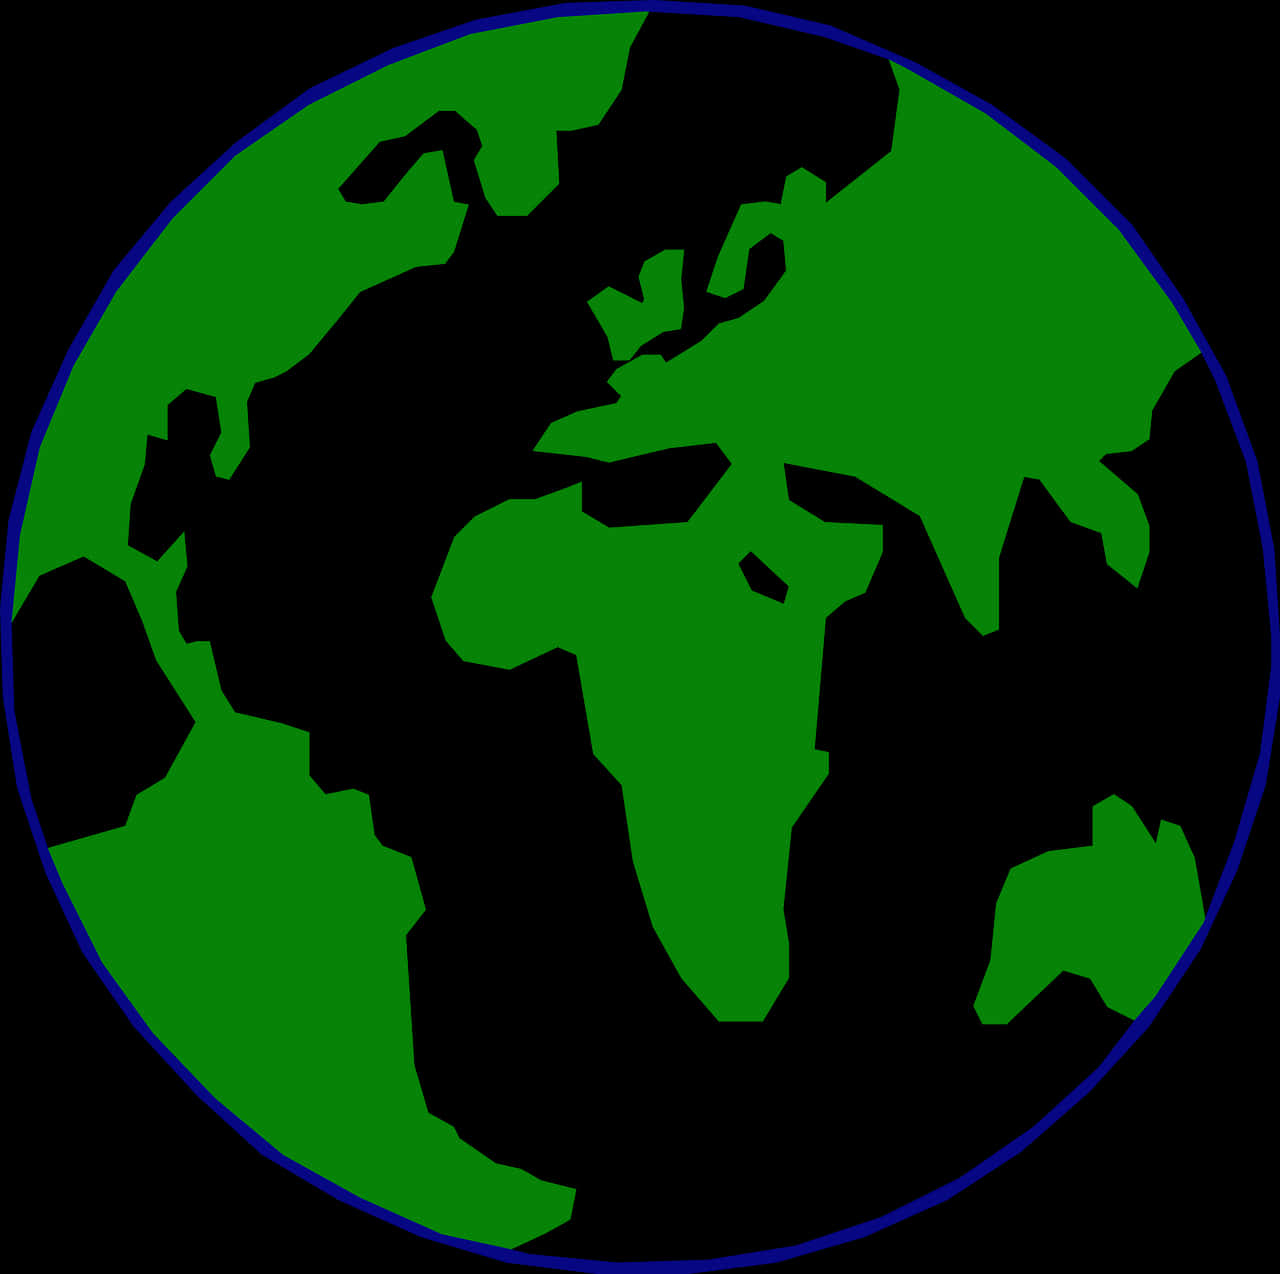 Stylized Green World Map